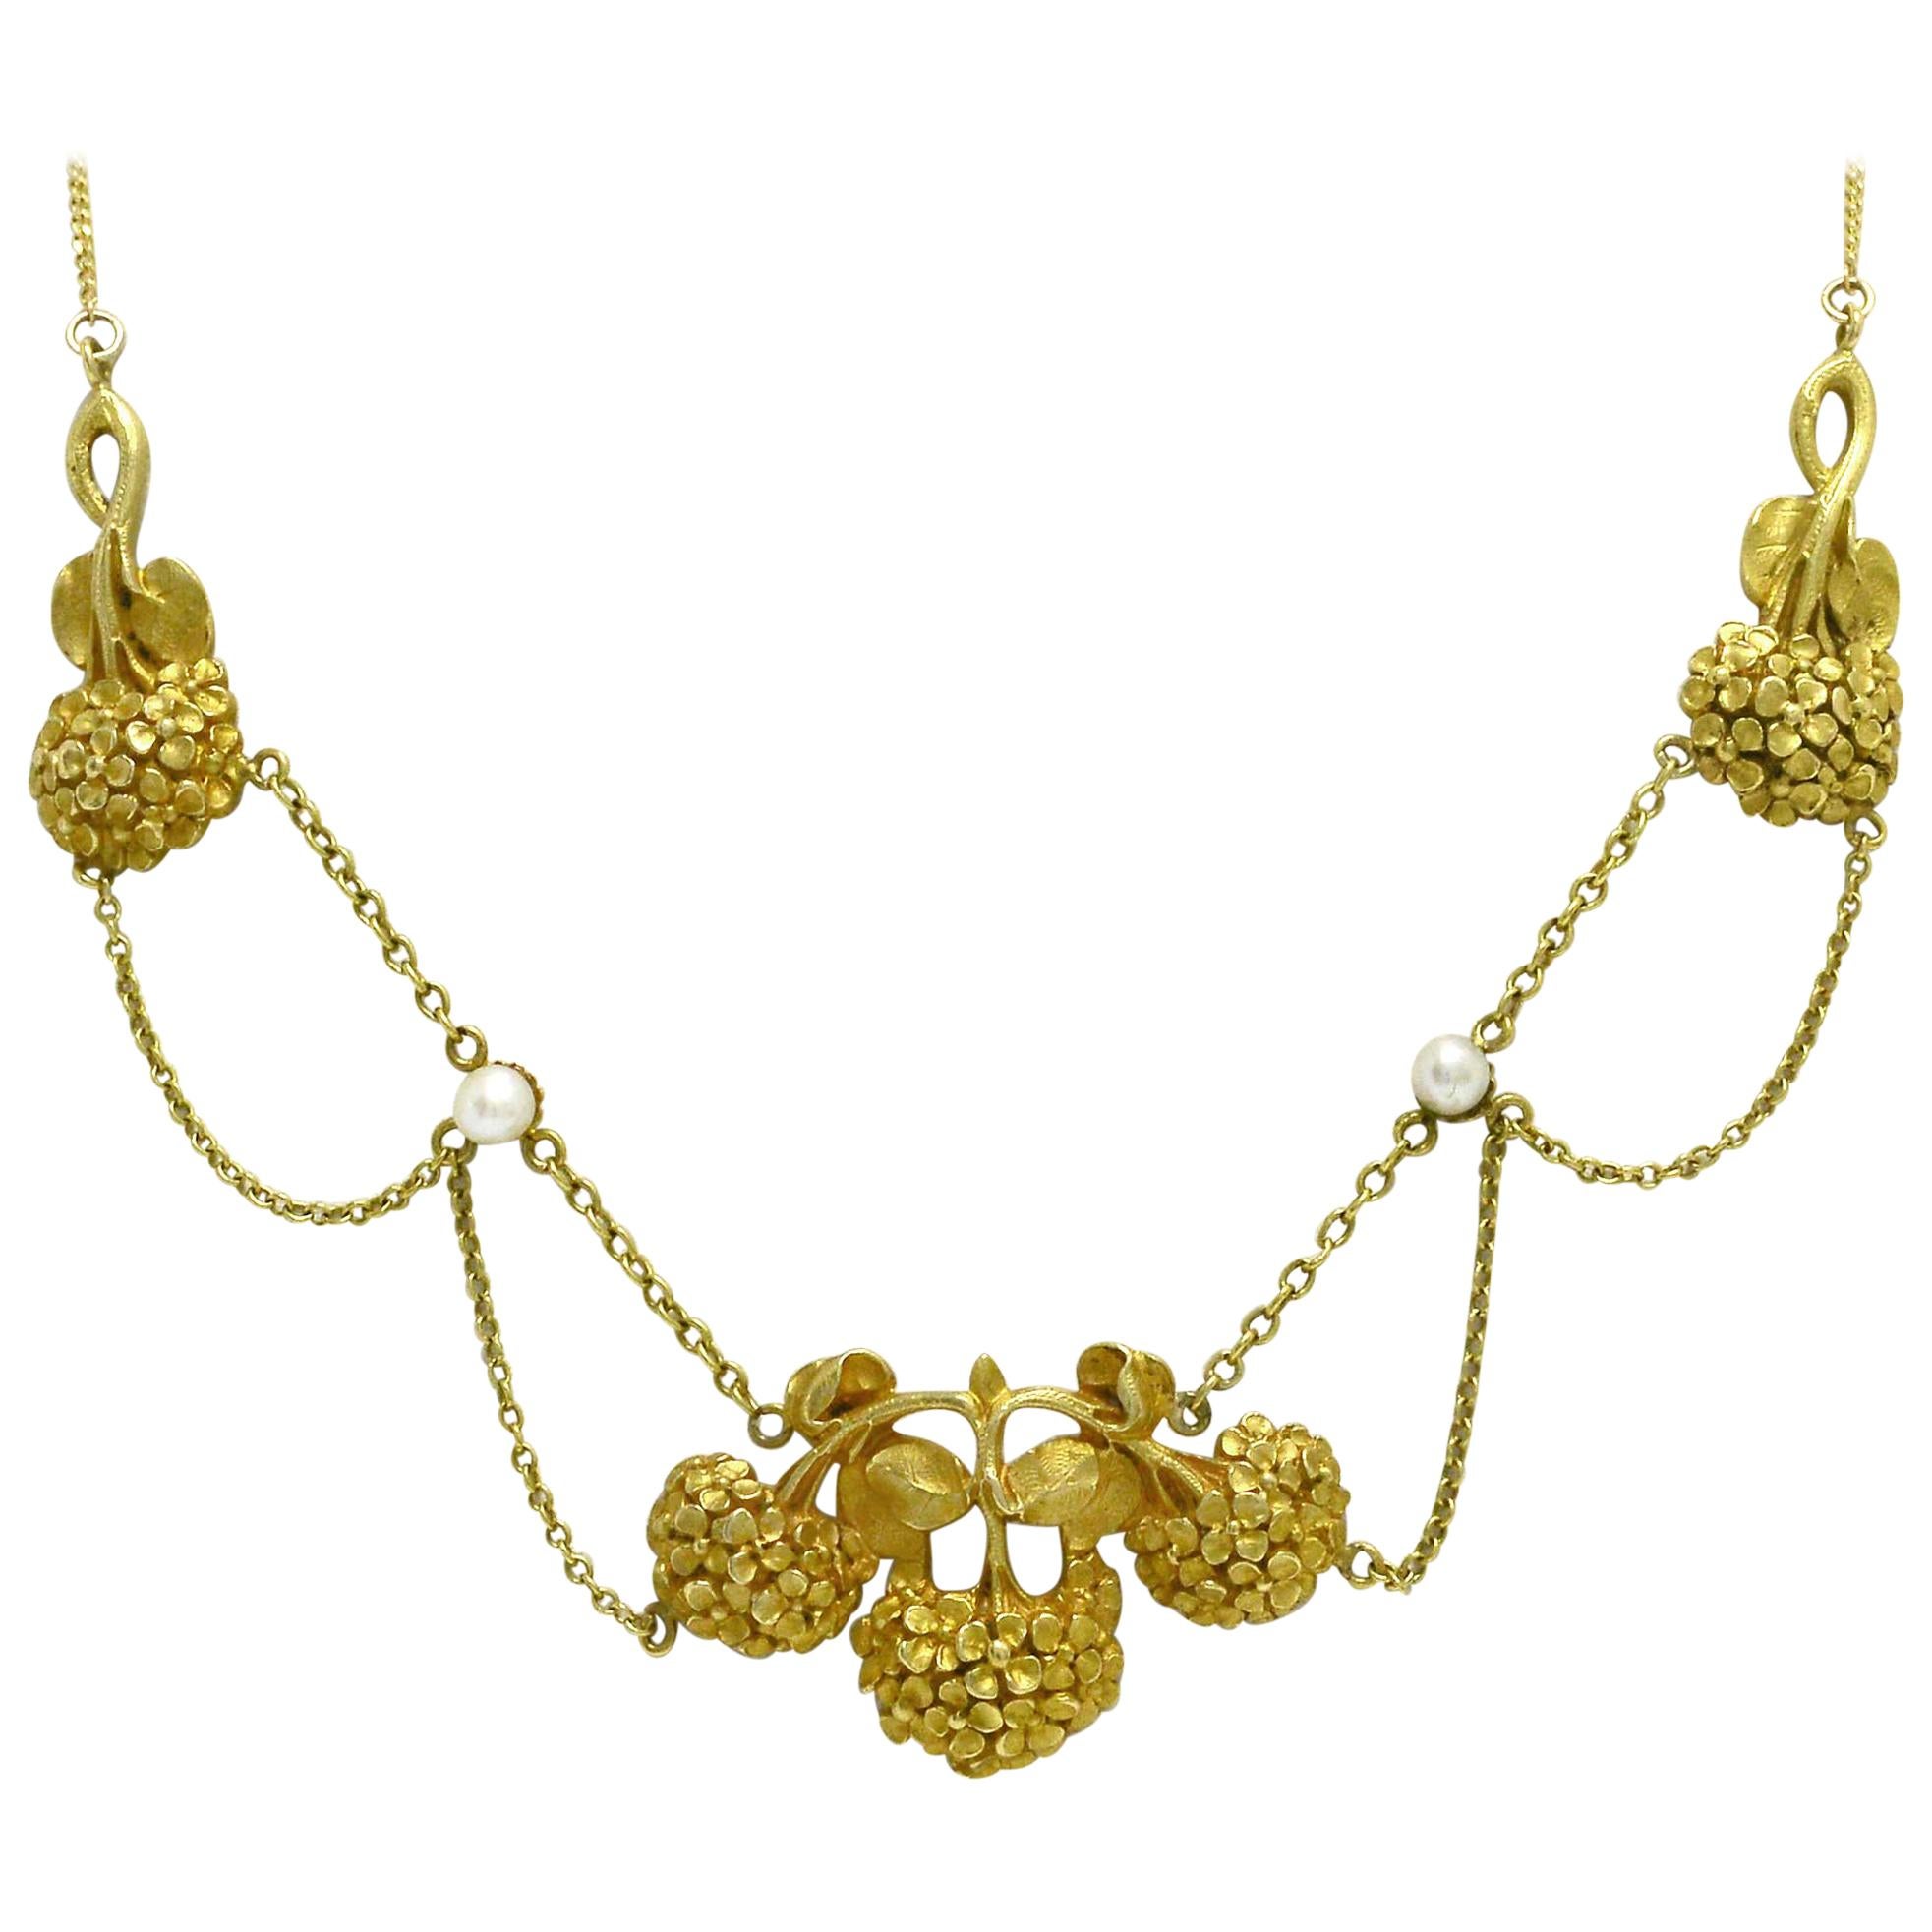 Art Nouveau Floral Necklace Seed Pearl 19 Karat Gold Antique Festoon Swags